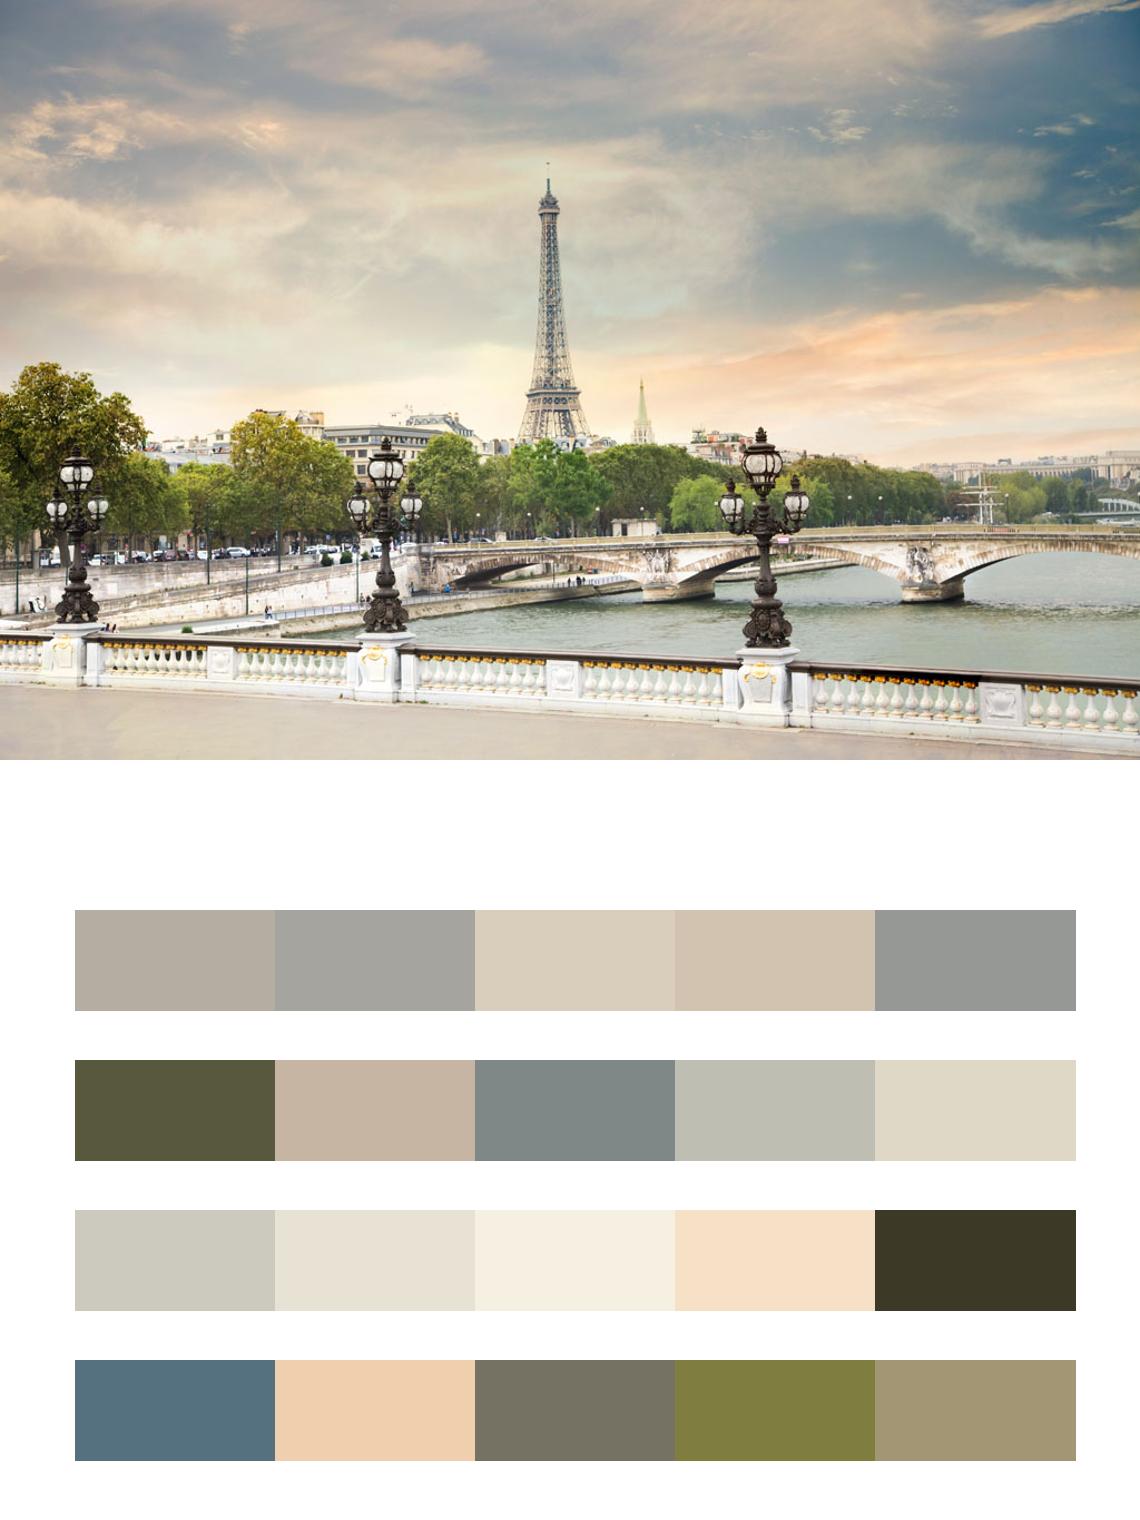 Париж Эйфелева башня в спокойных тонах цвета